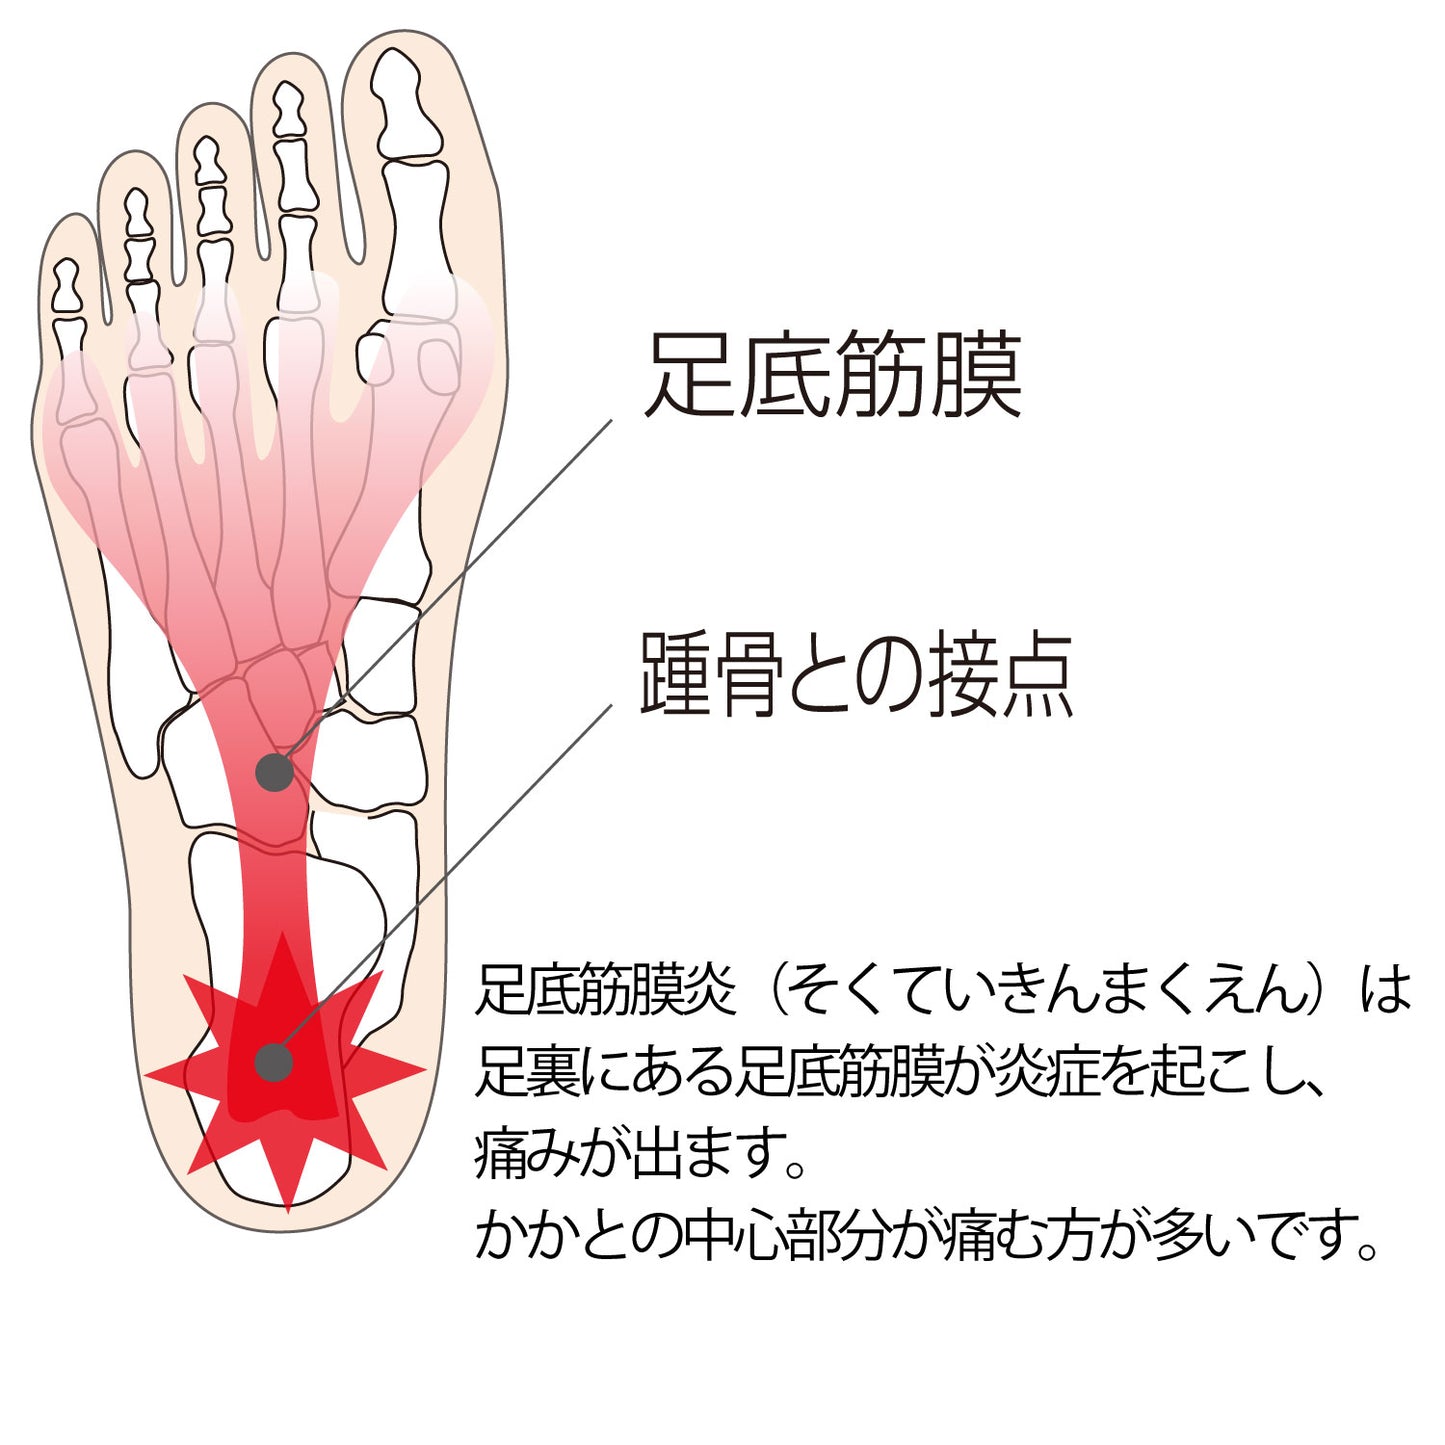 足底筋膜炎は足裏にある足底筋膜が炎症を起こし、痛みがでます。かかとの中心部分が痛む方が多いです